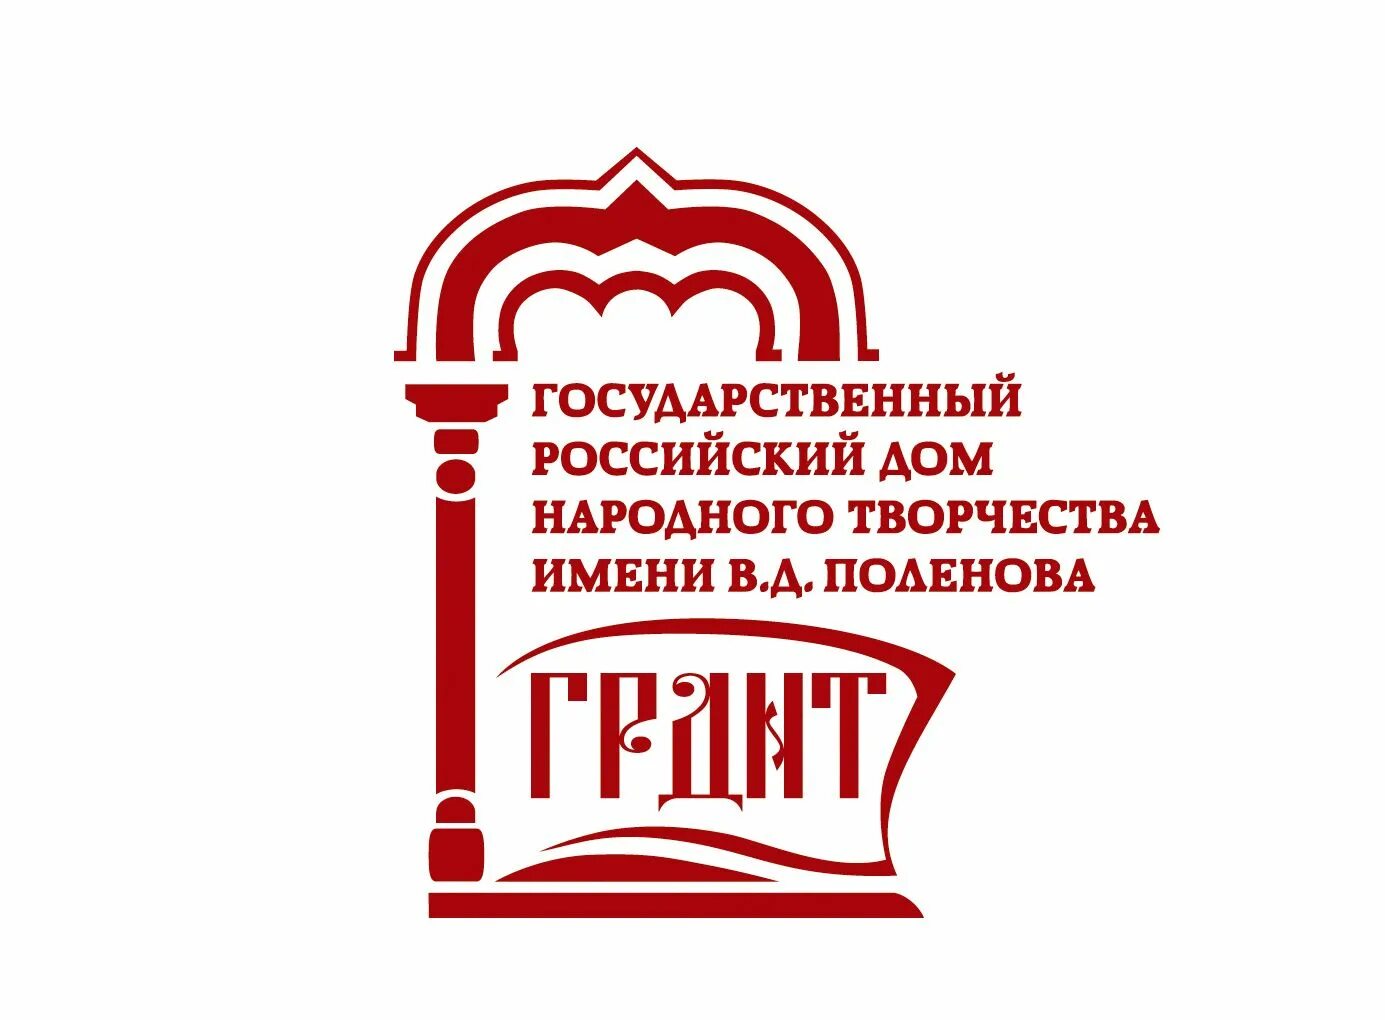 Культурные учреждения российской федерации